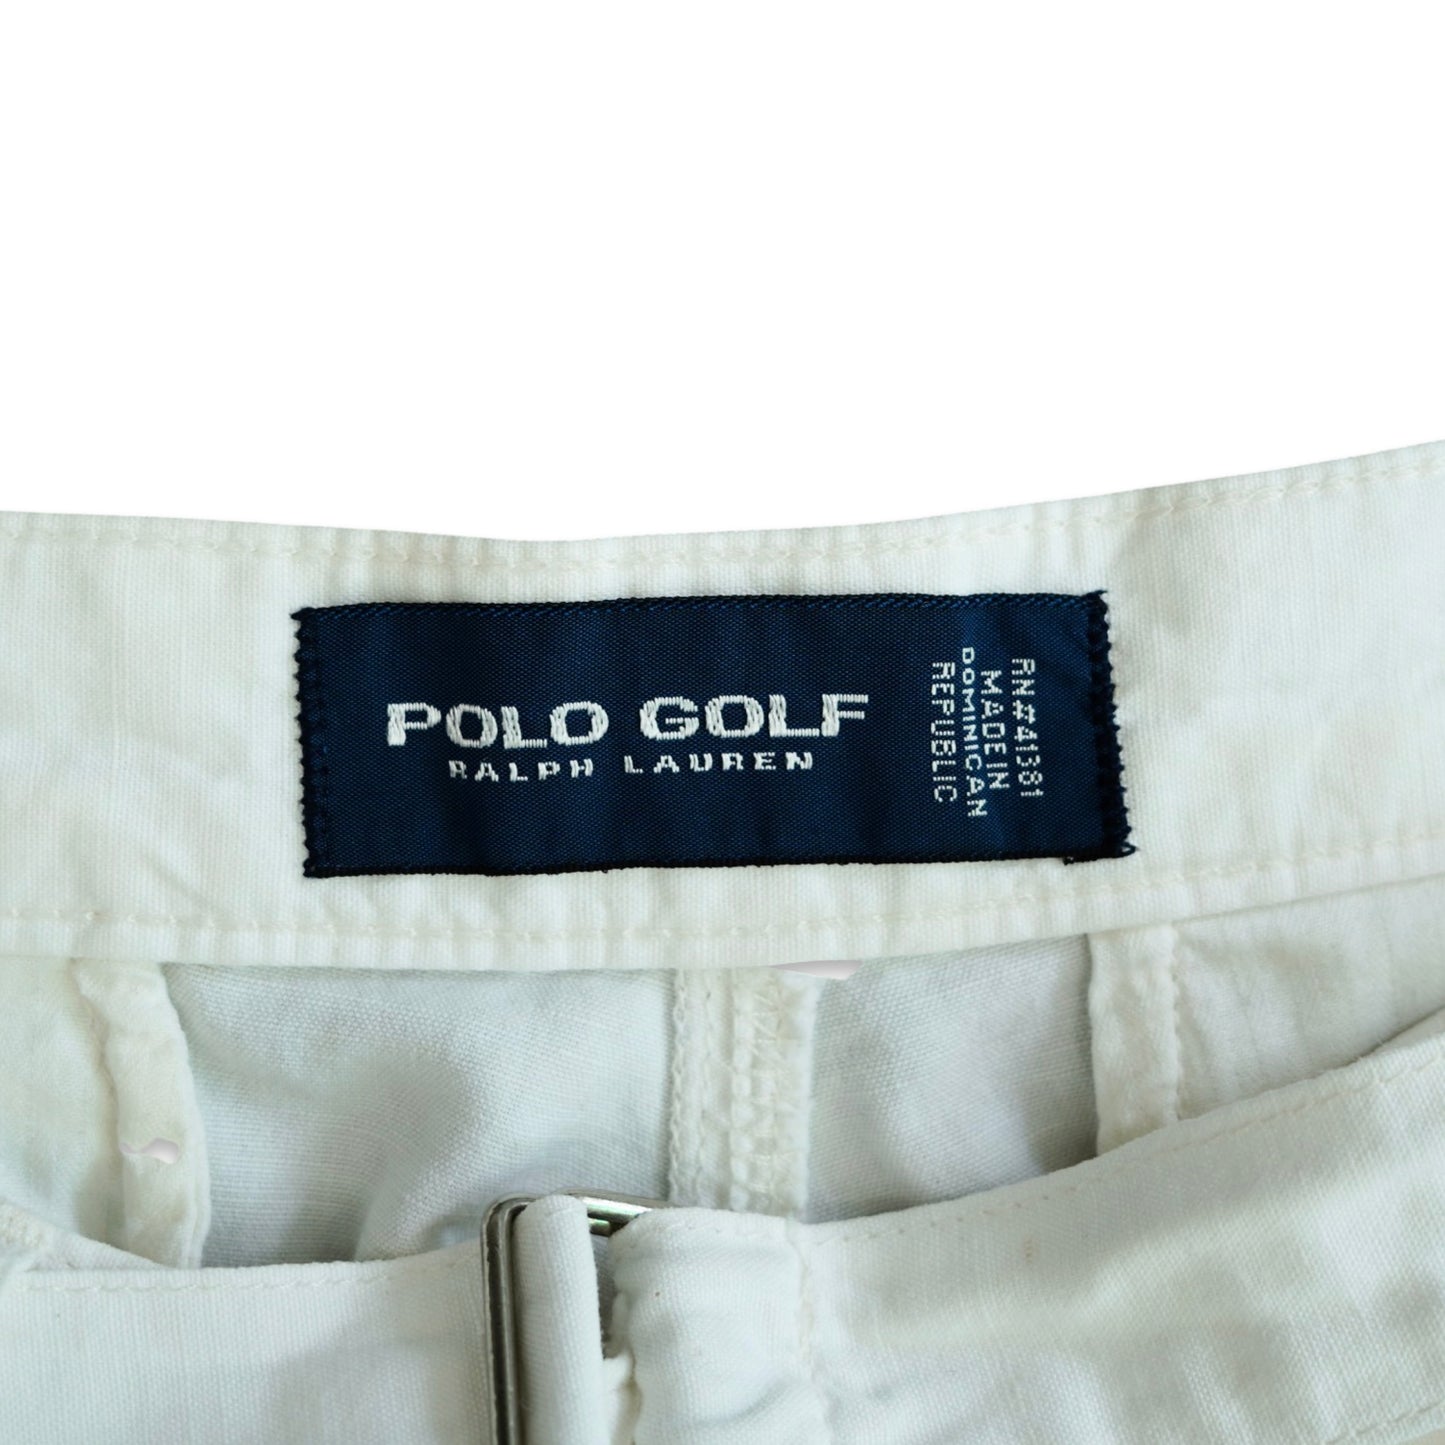 POLO GOLF Cotton/Linen Shorts